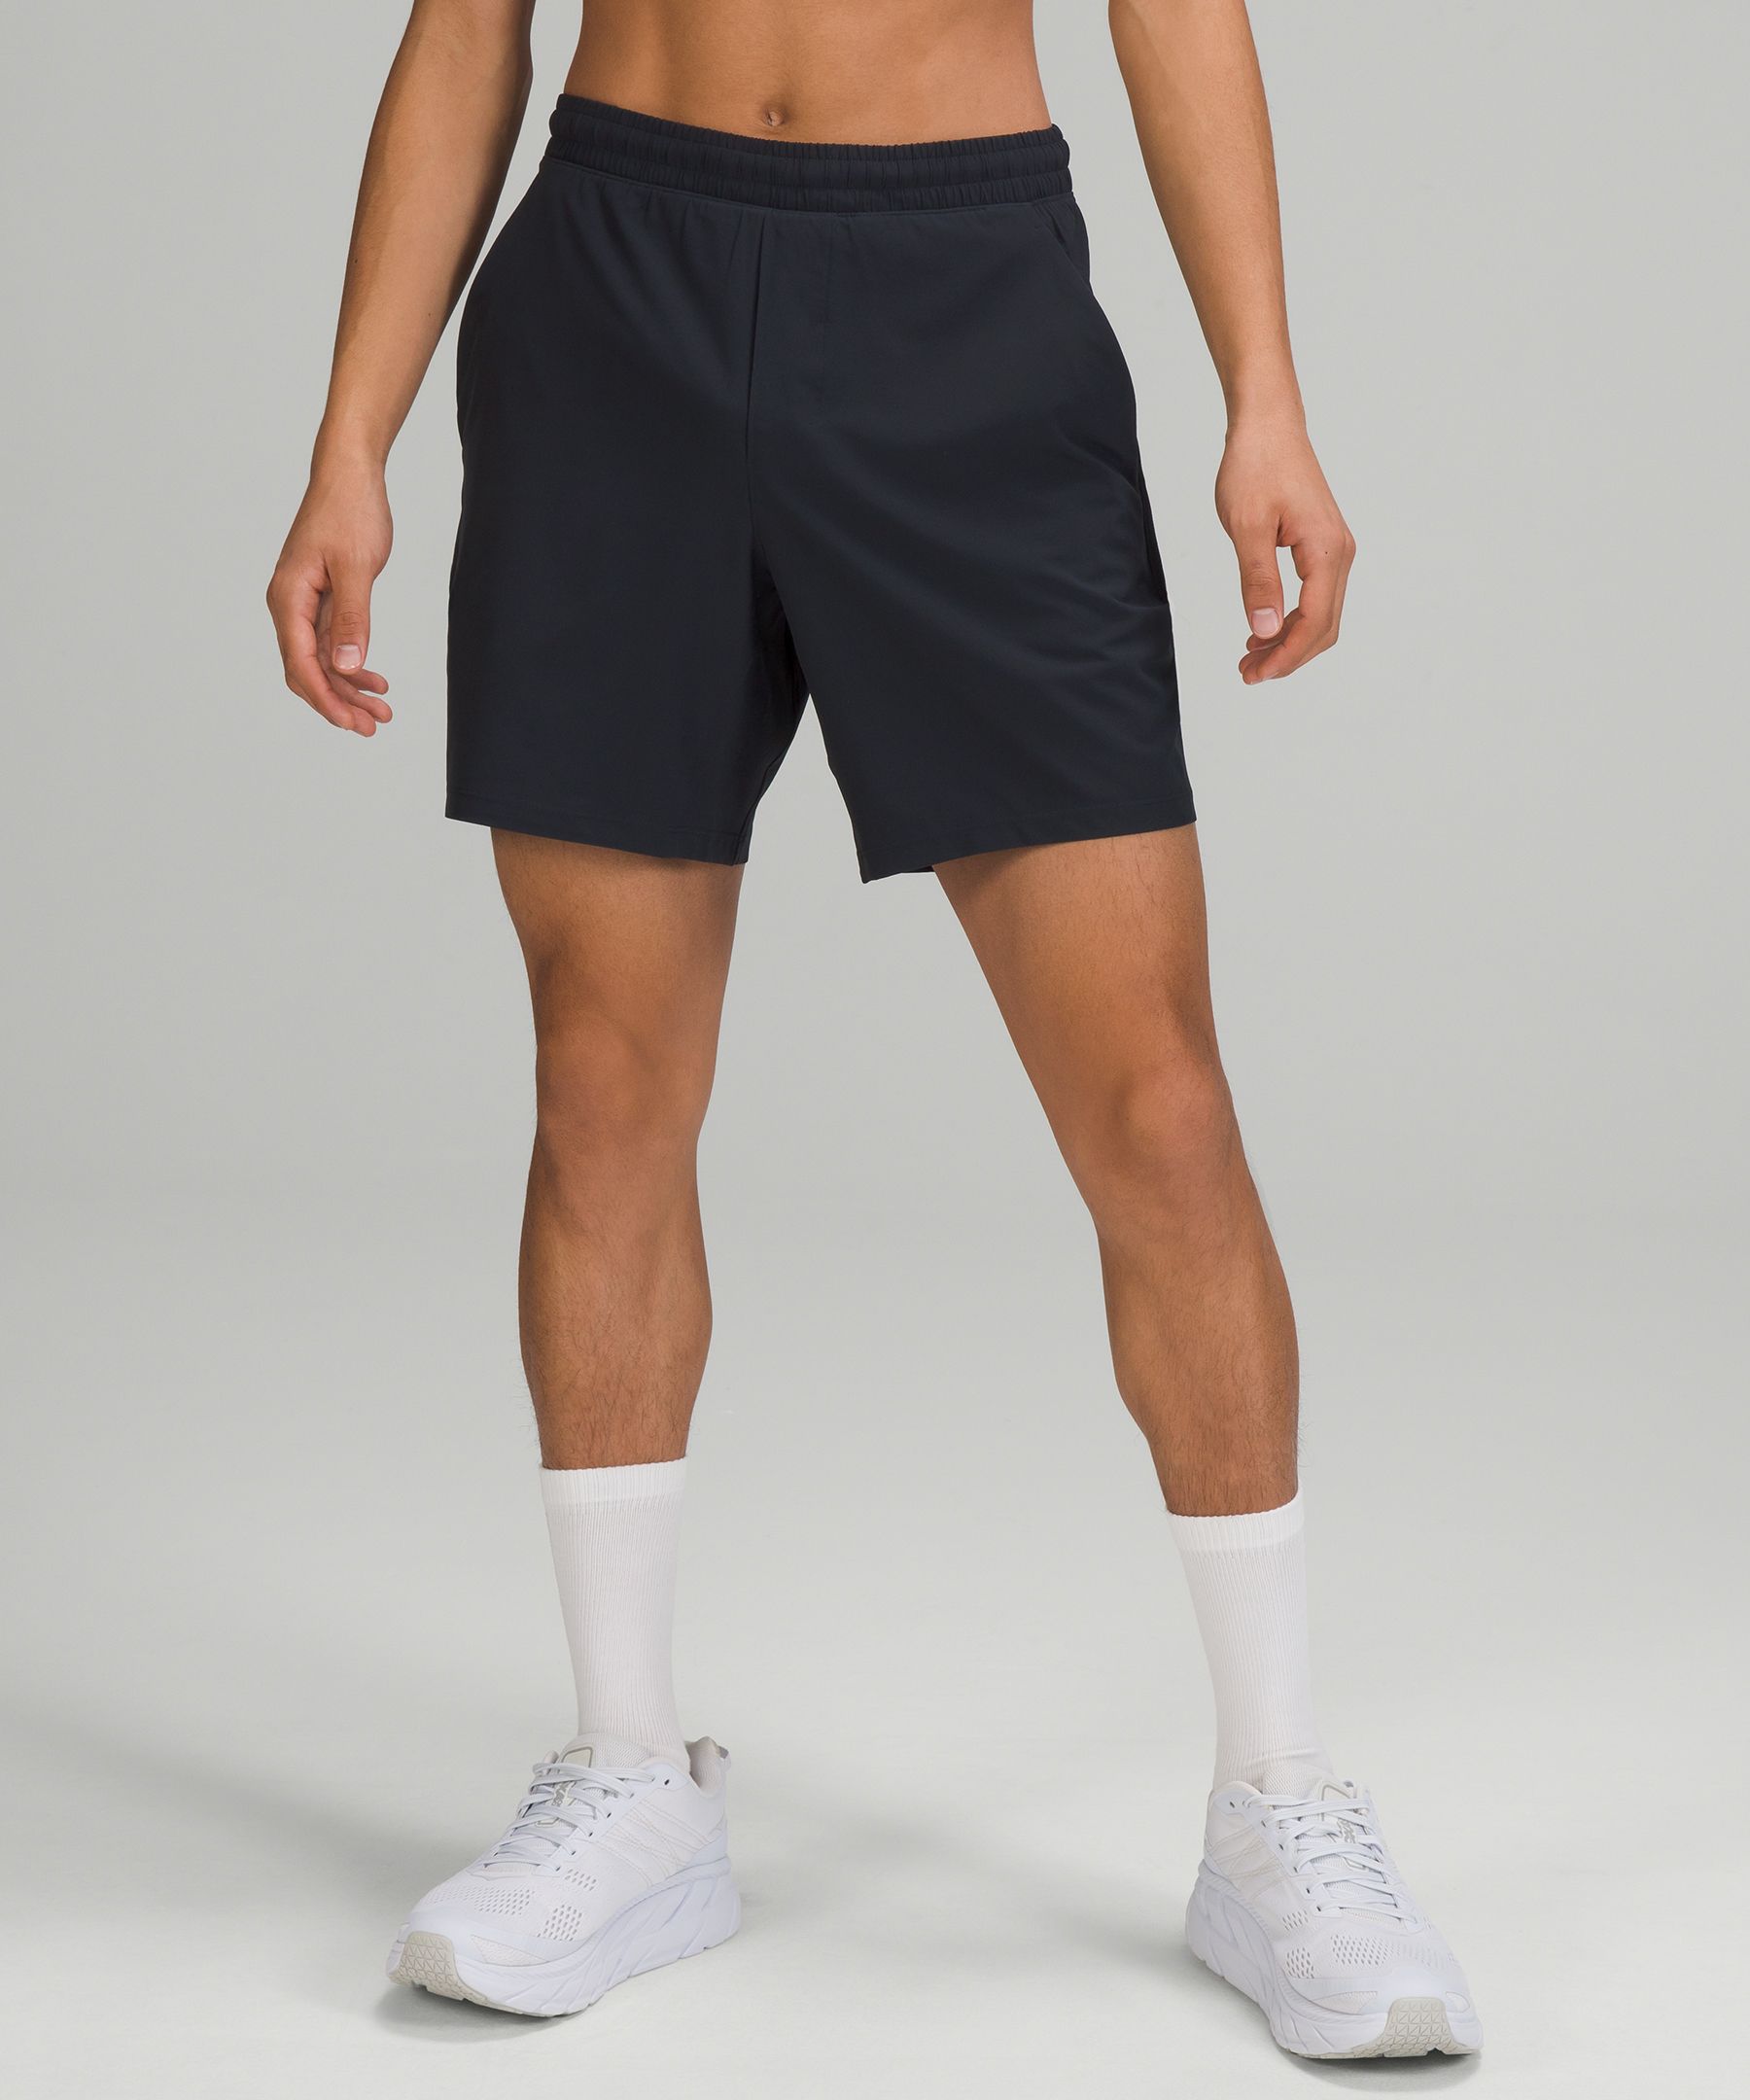 Men's Athletic Shorts | lululemon